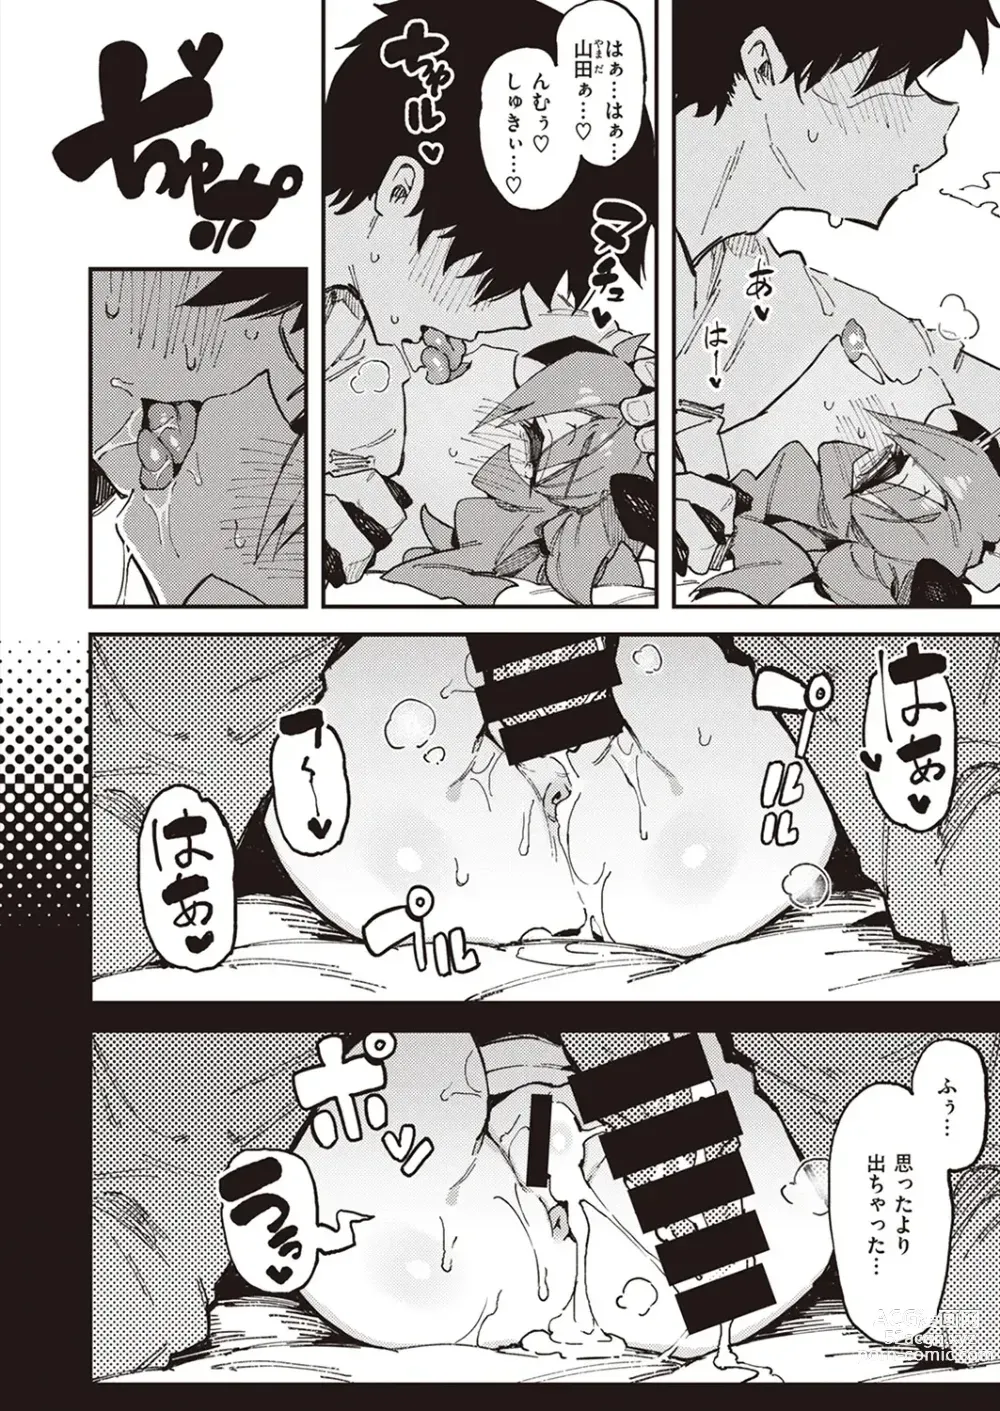 Page 49 of manga Blutig Karte